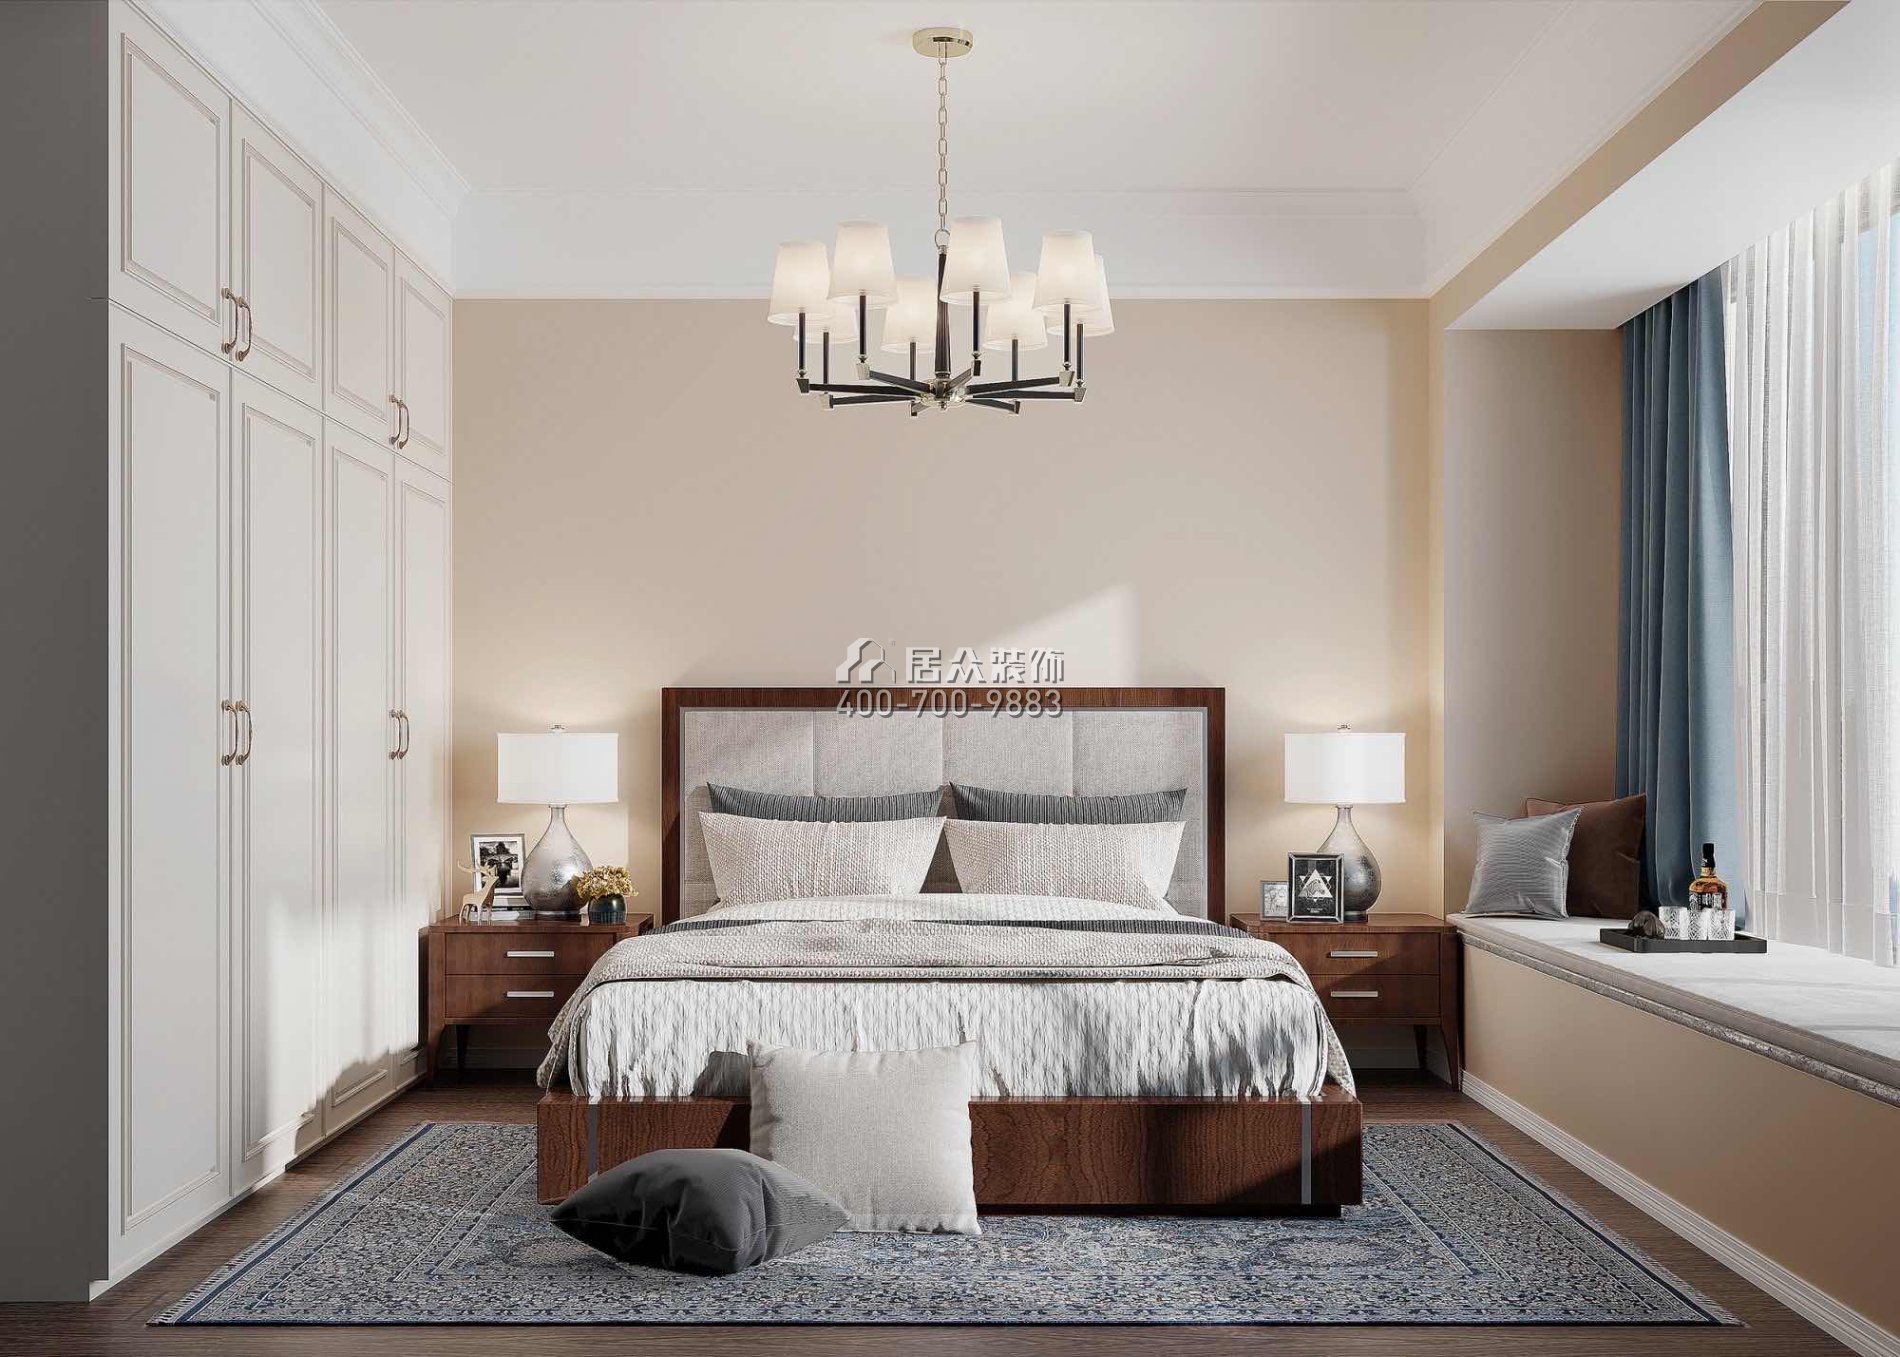 华发水岸210平方米美式风格复式户型卧室装修效果图